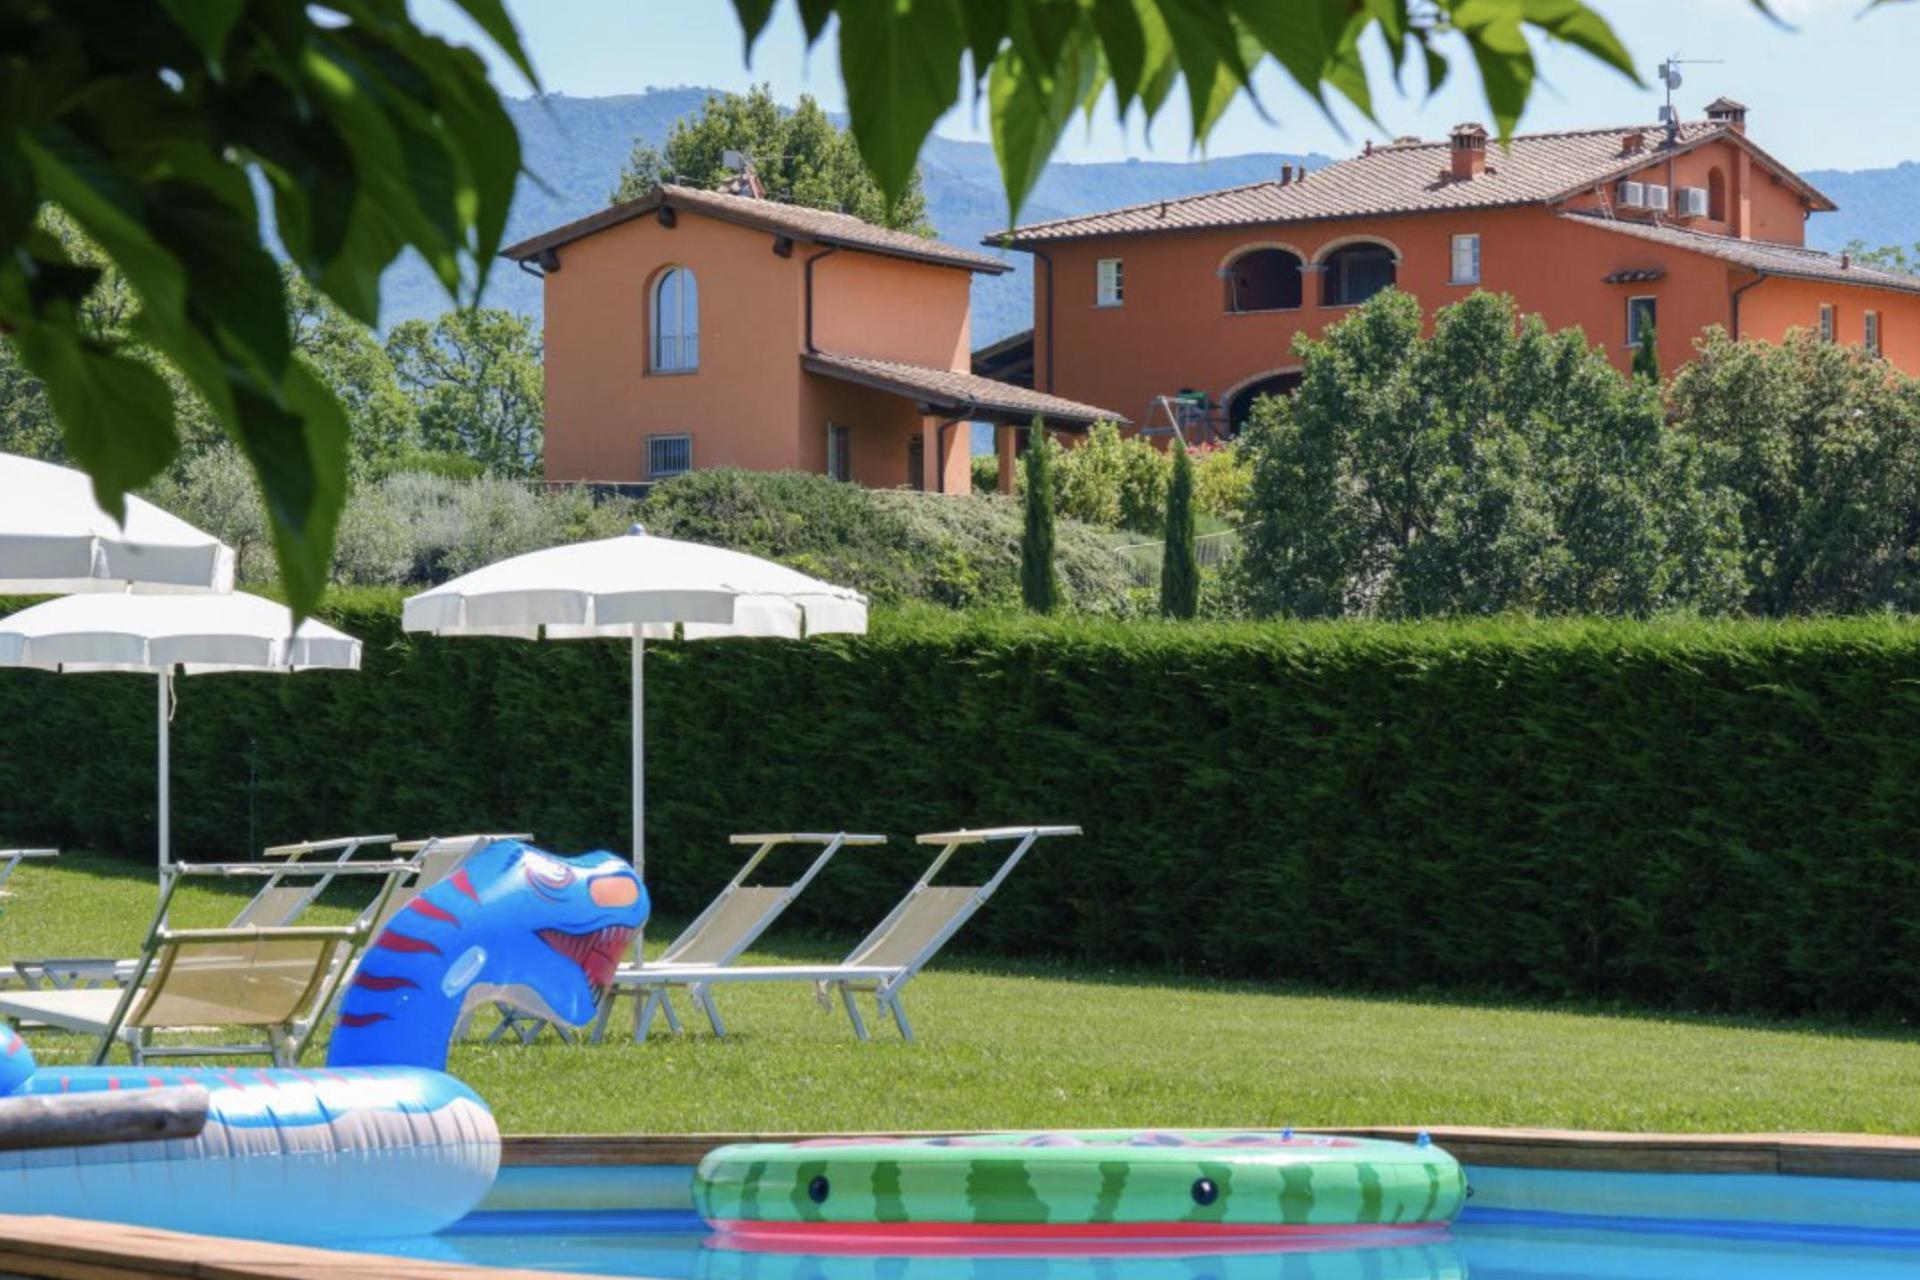 Kindvriendelijke agriturismo met ruime appartementen in Toscane